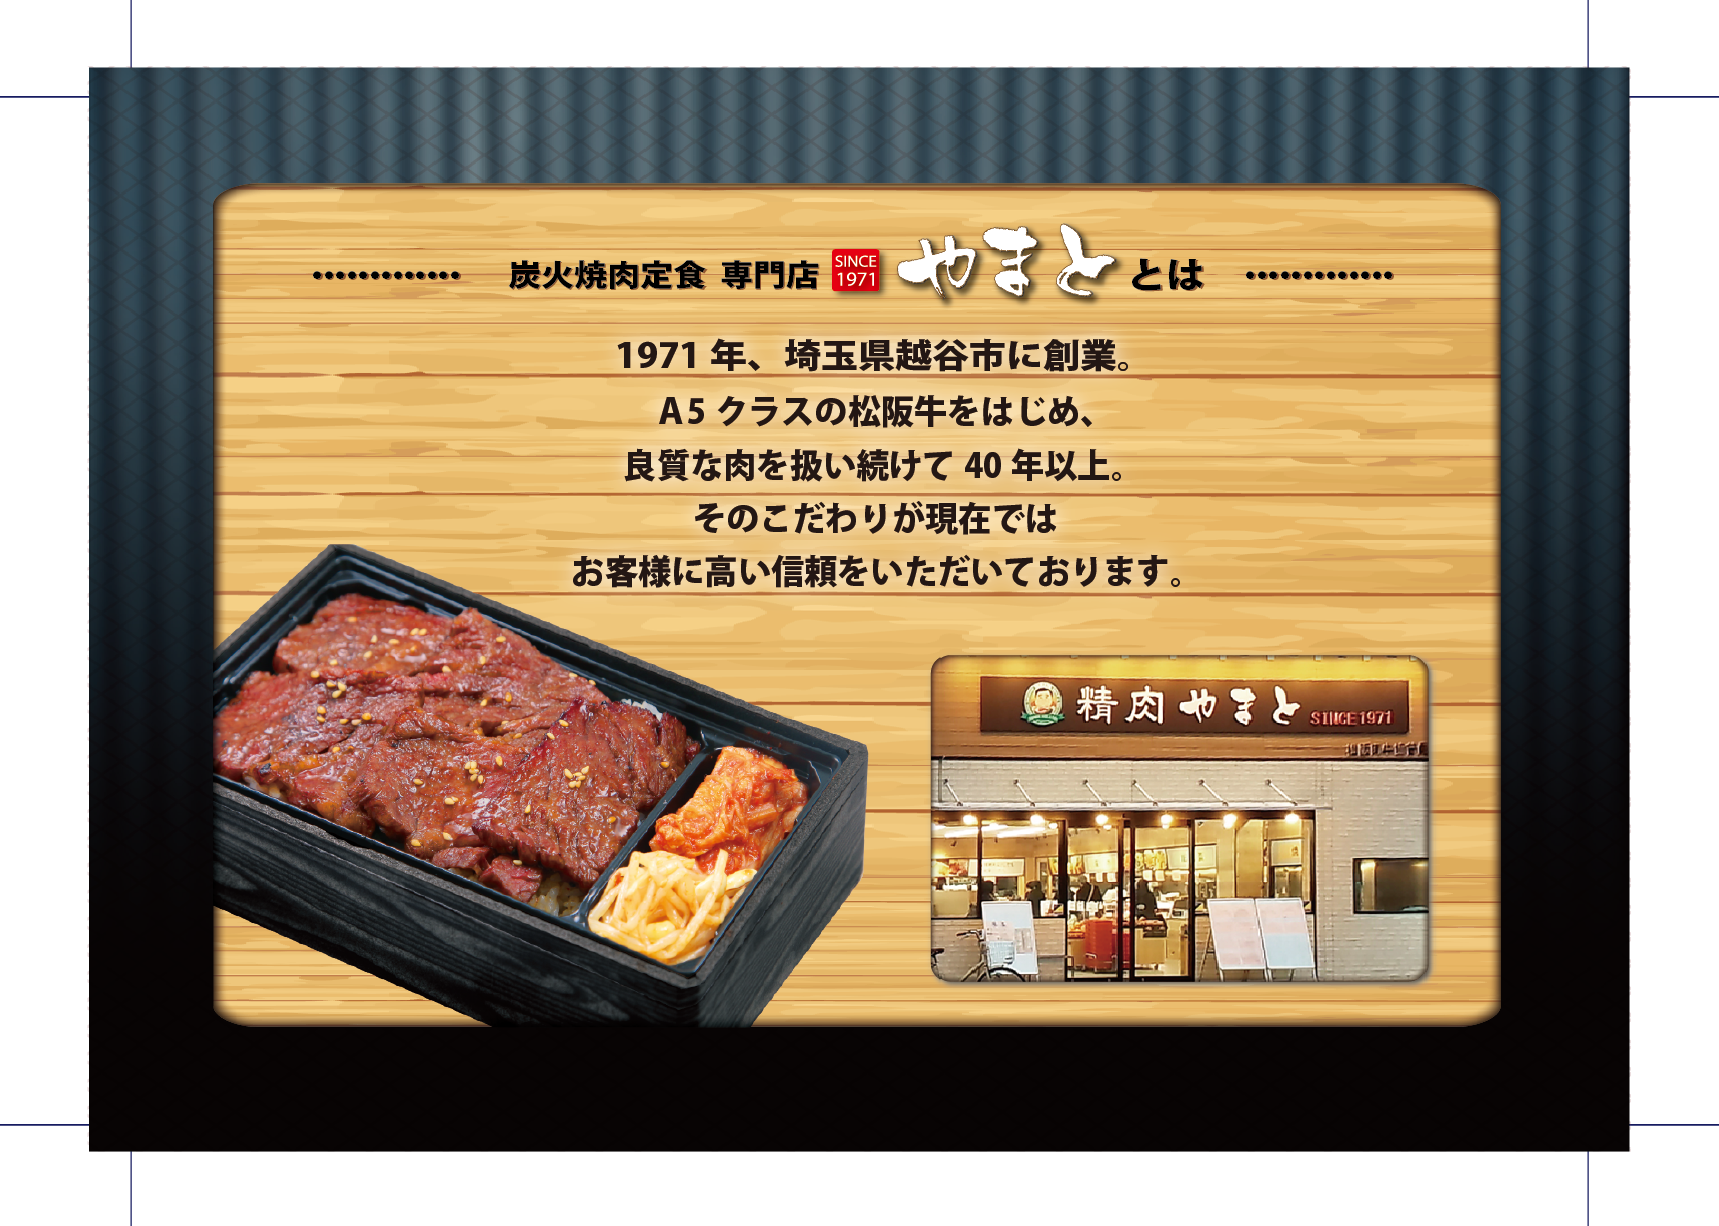 日本初の炭火焼肉定食専門店 炭火焼肉定食専門店 やまと が東京 巣鴨に5月24日オープン 株式会社ケンコーのプレスリリース